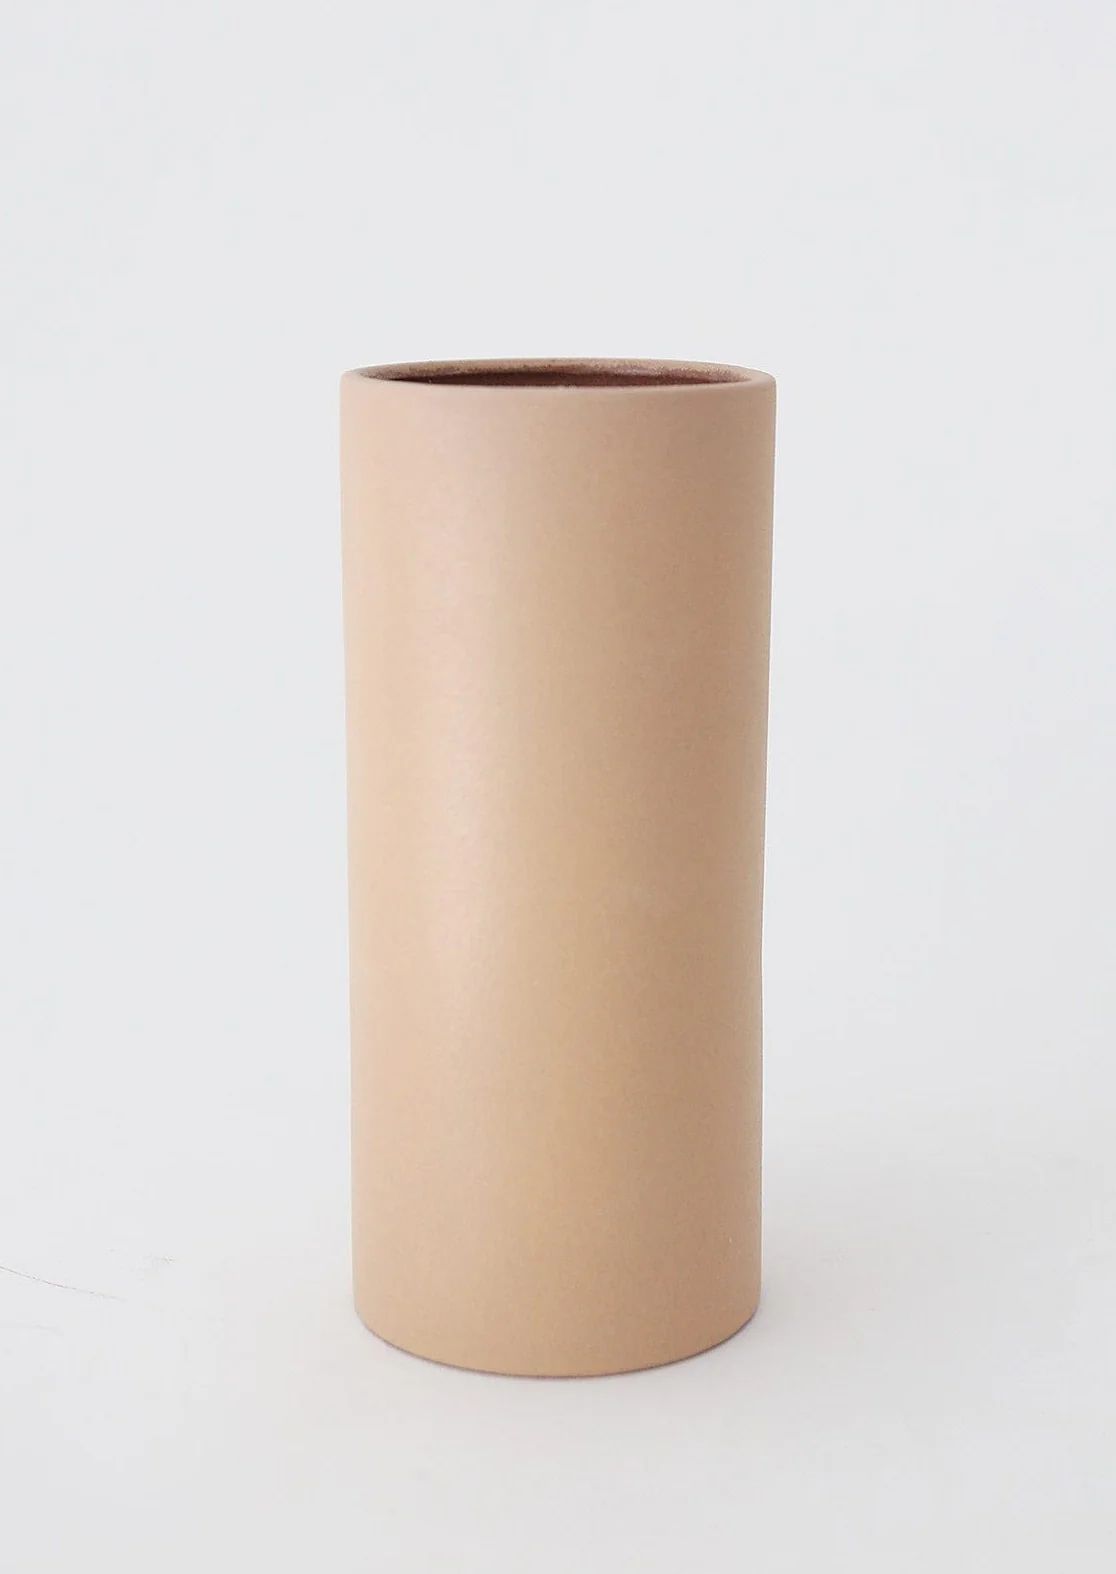 Afloral Sand Watertight Terra Cotta Vase - 9" | Afloral